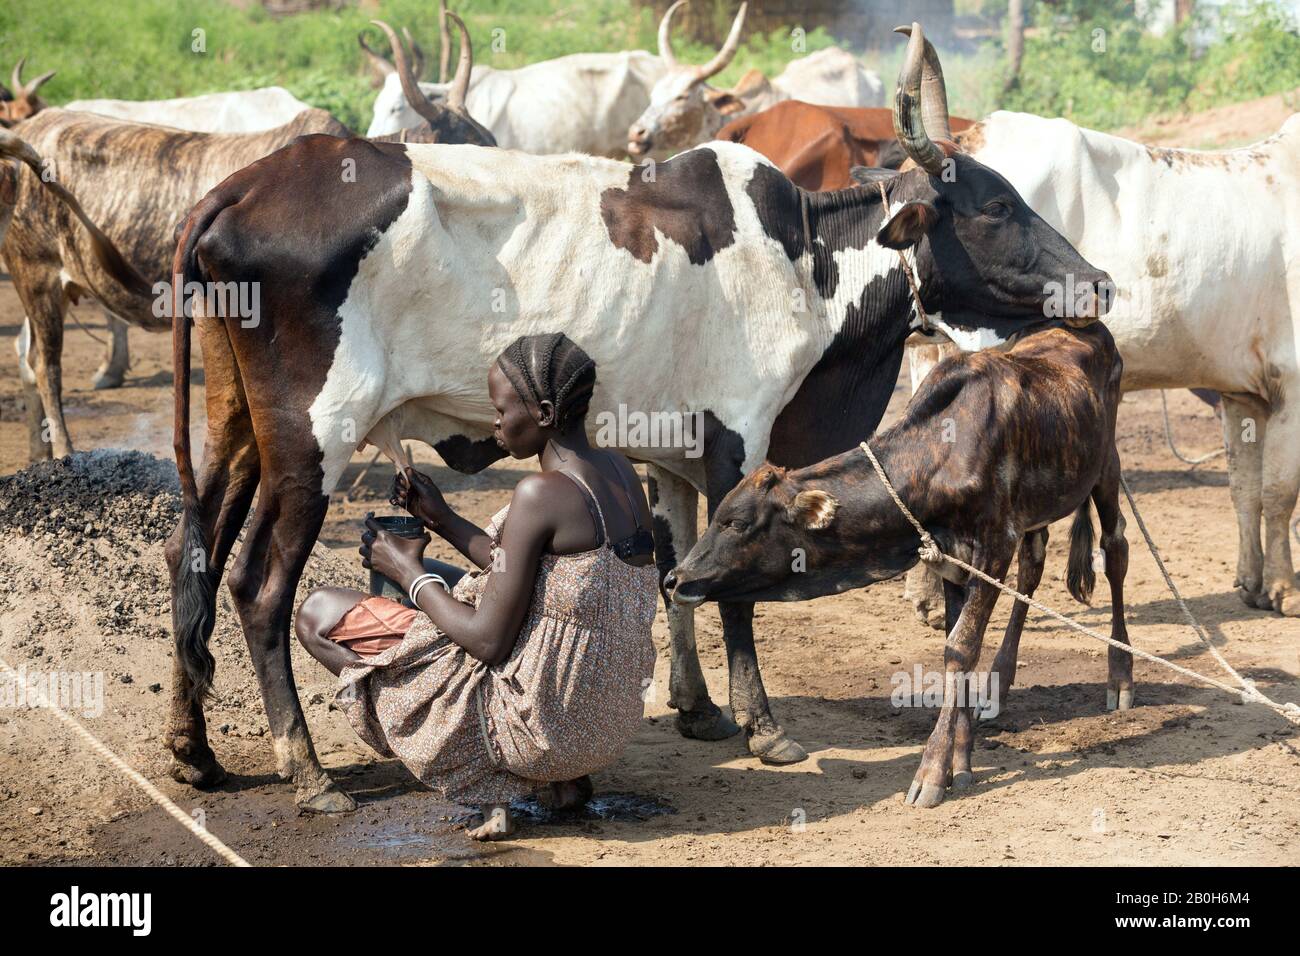 31.10.2019, Belinkum, Gambela, Äthiopien - Rinderzüchter der äthiopischen Volksgruppe Nuer. Eine Frau melkelt eine afrikanische Kuh. Projektdokumentation Stockfoto